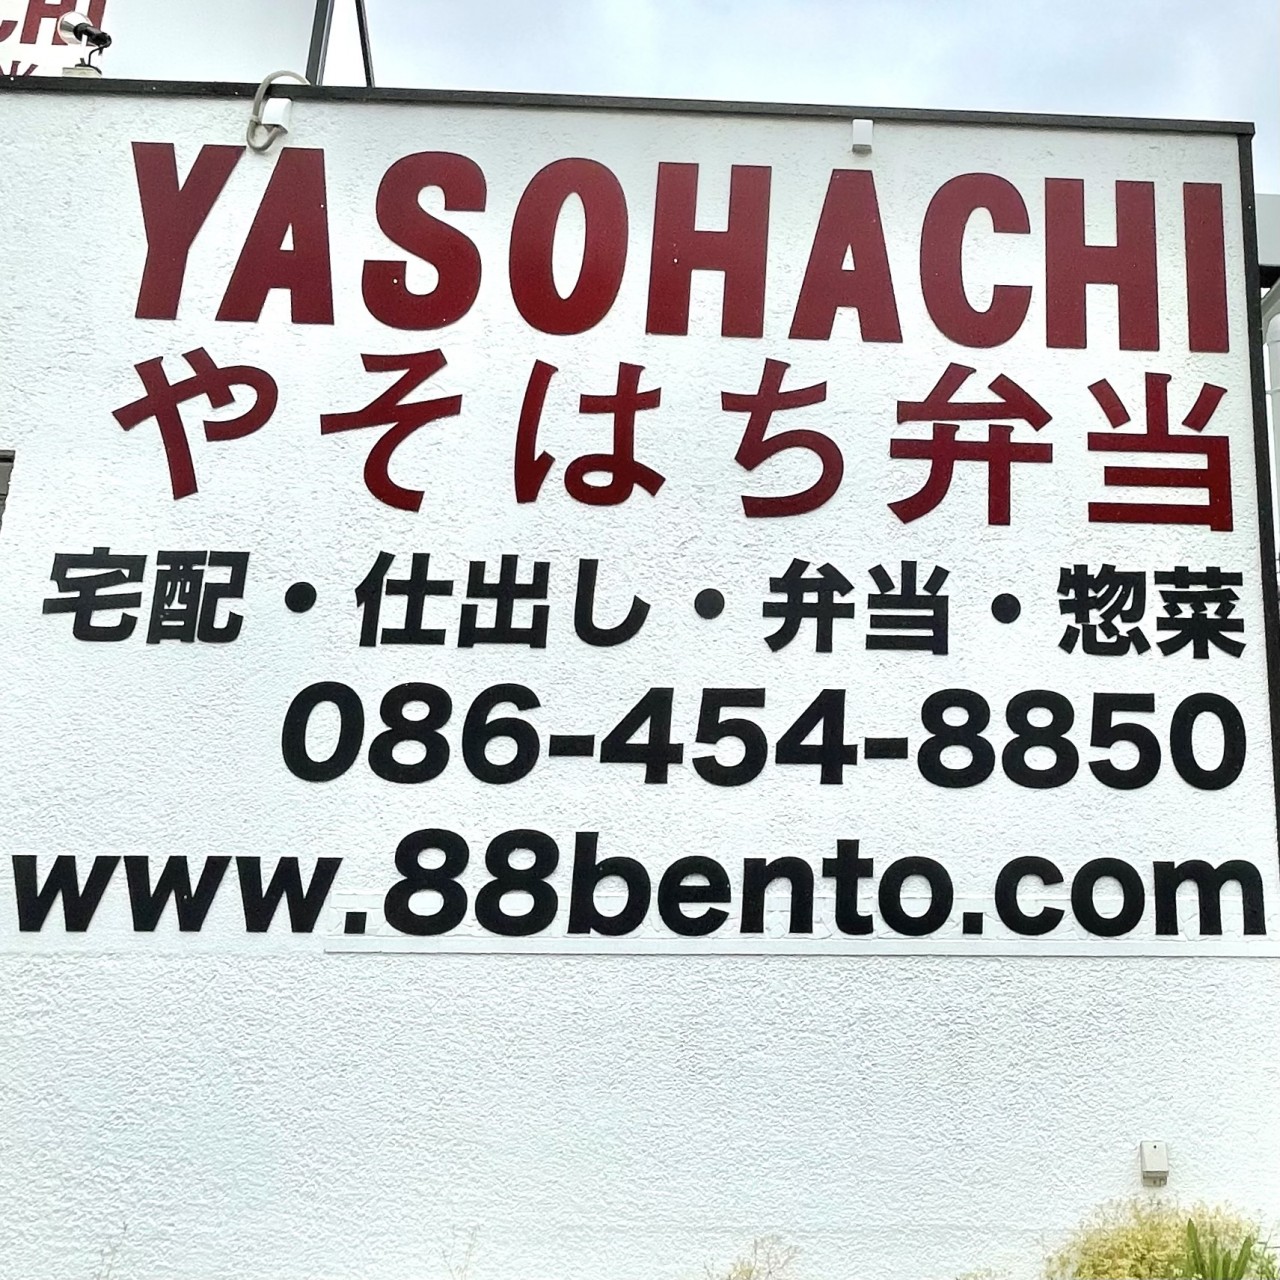 yasohati1